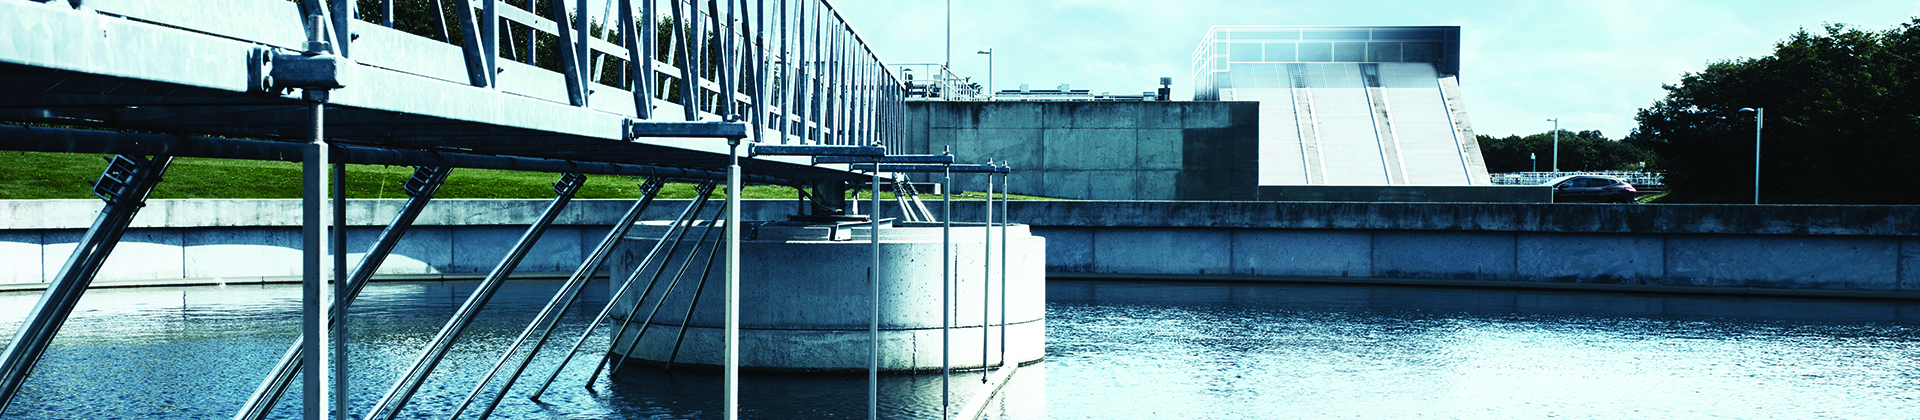 In der Wasseraufbereitungsanlage in Marselisborg verschob sich seit 2010 der Fokus von der Minimierung des Energieverbrauchs hin zu einer Maximierung des Netto-Energieüberschusses